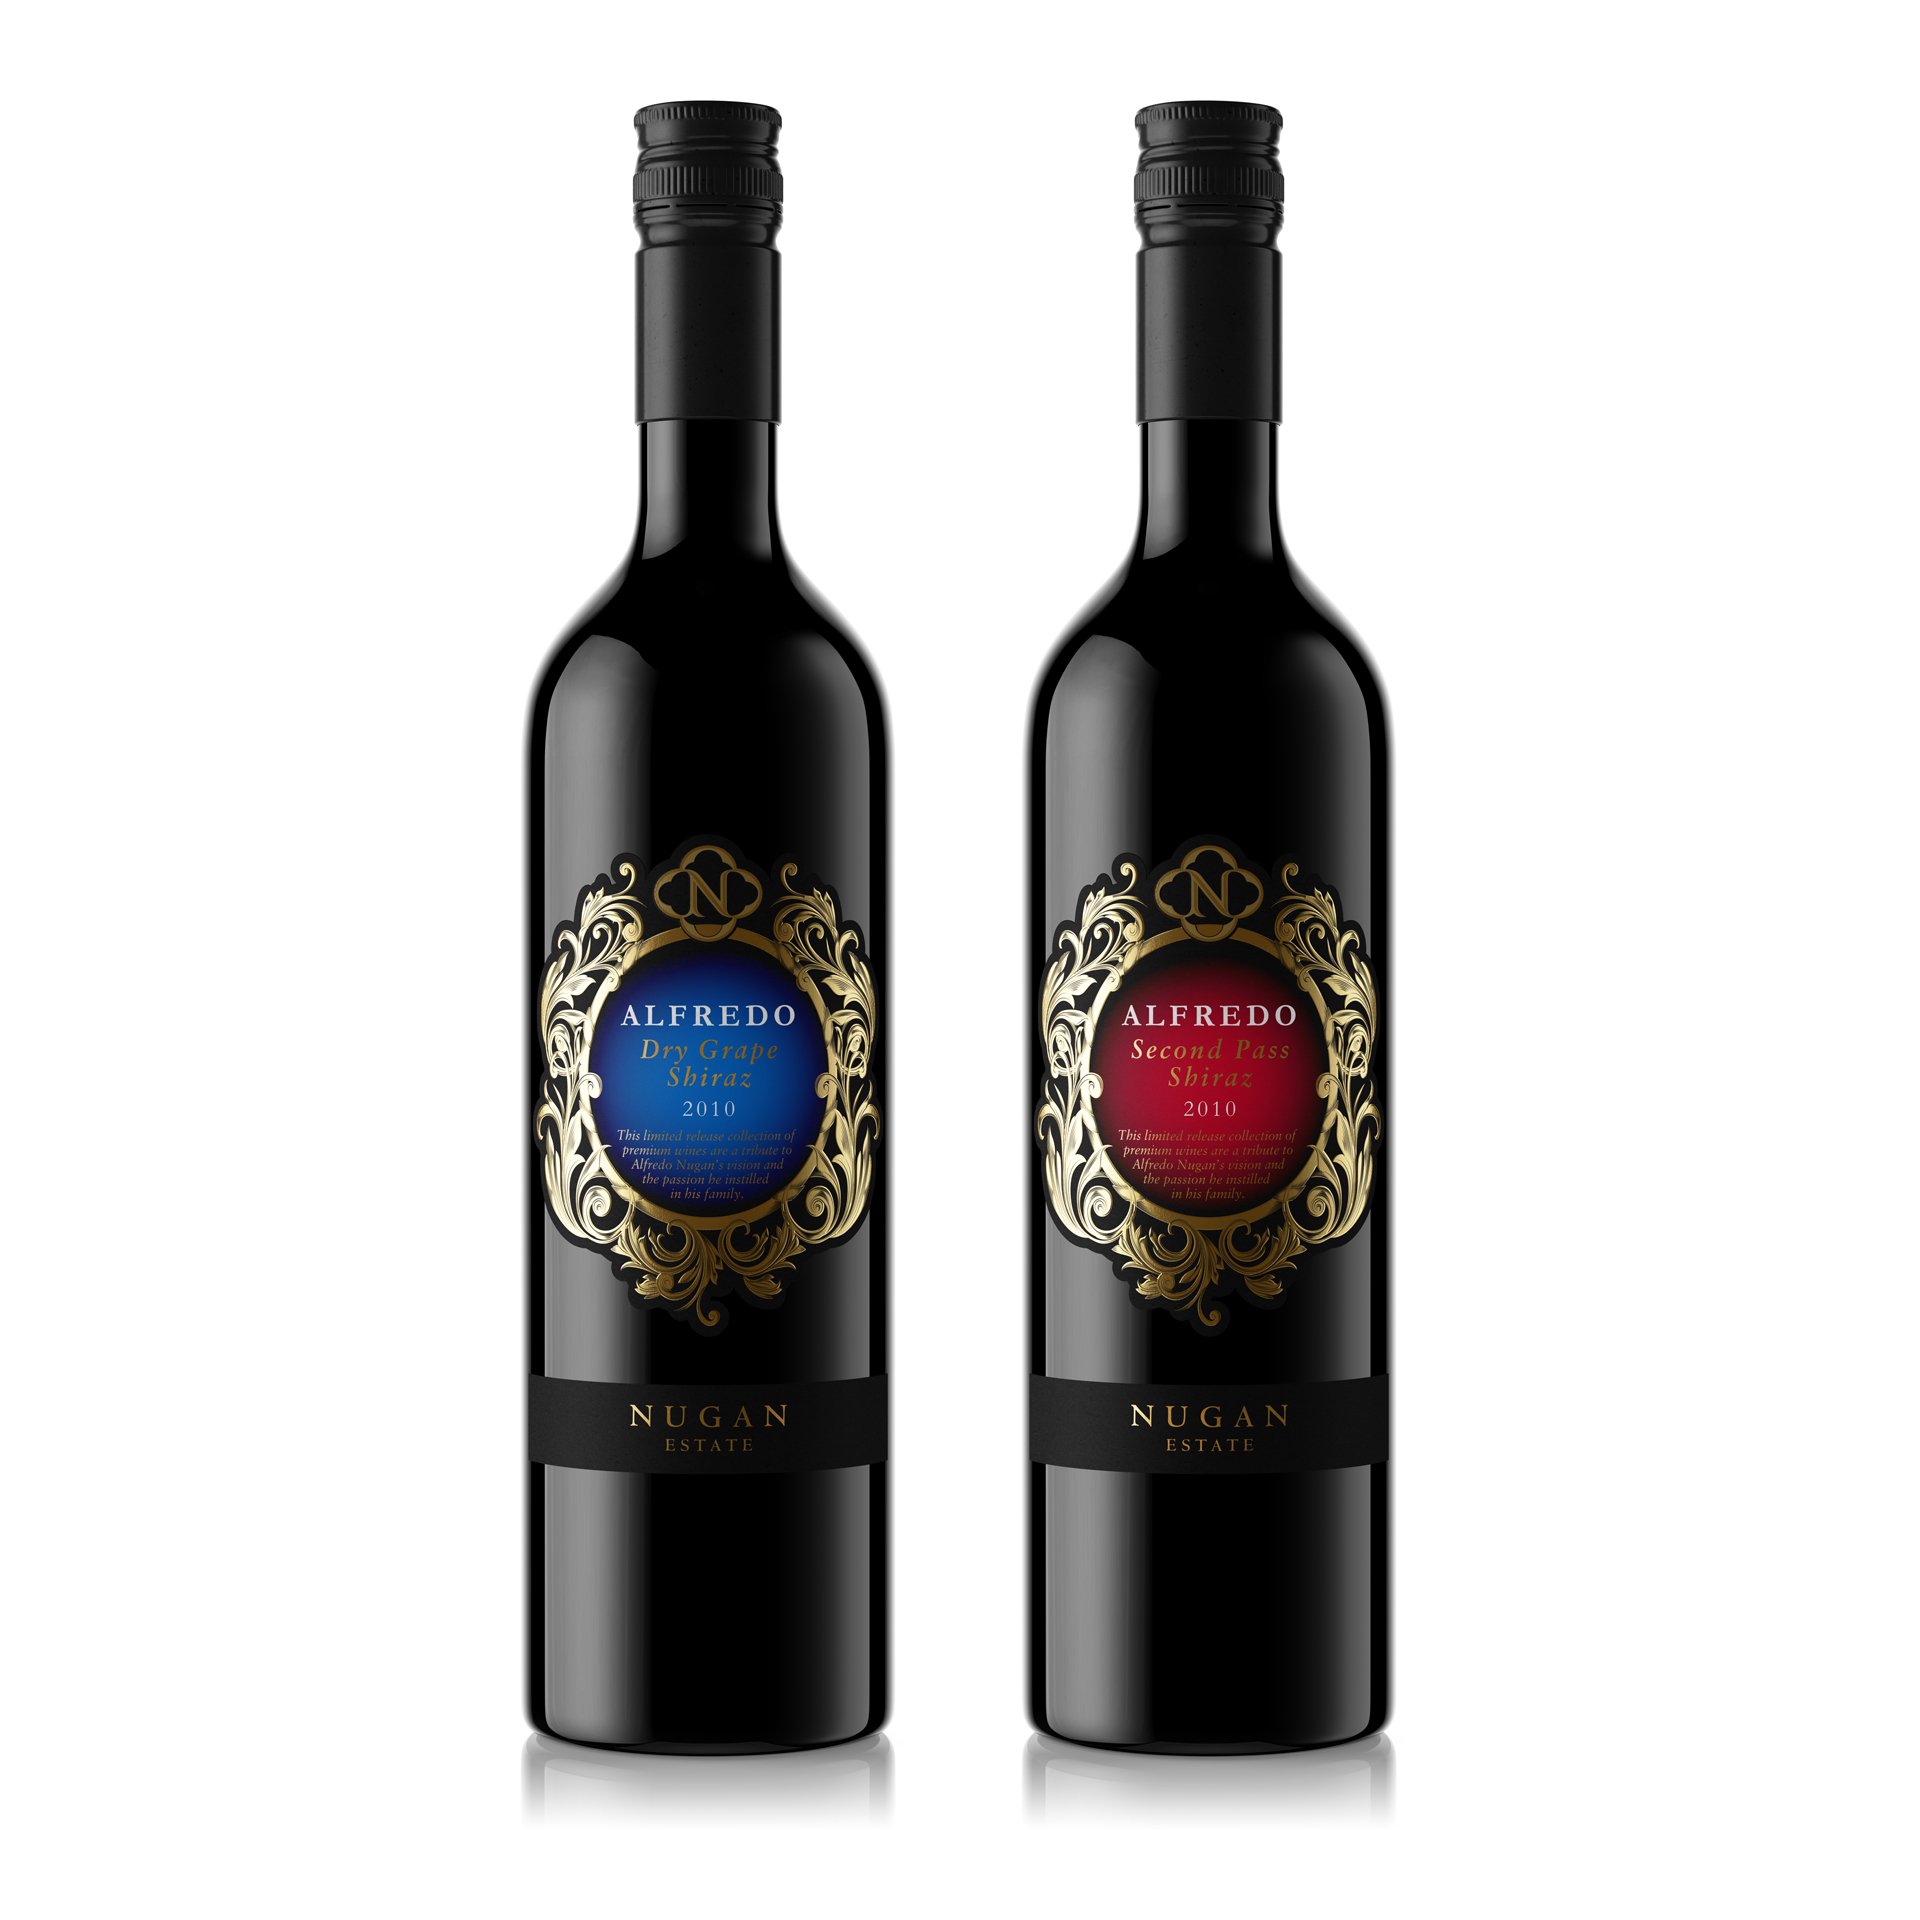 NuganEstateAlfredo wine packaging design